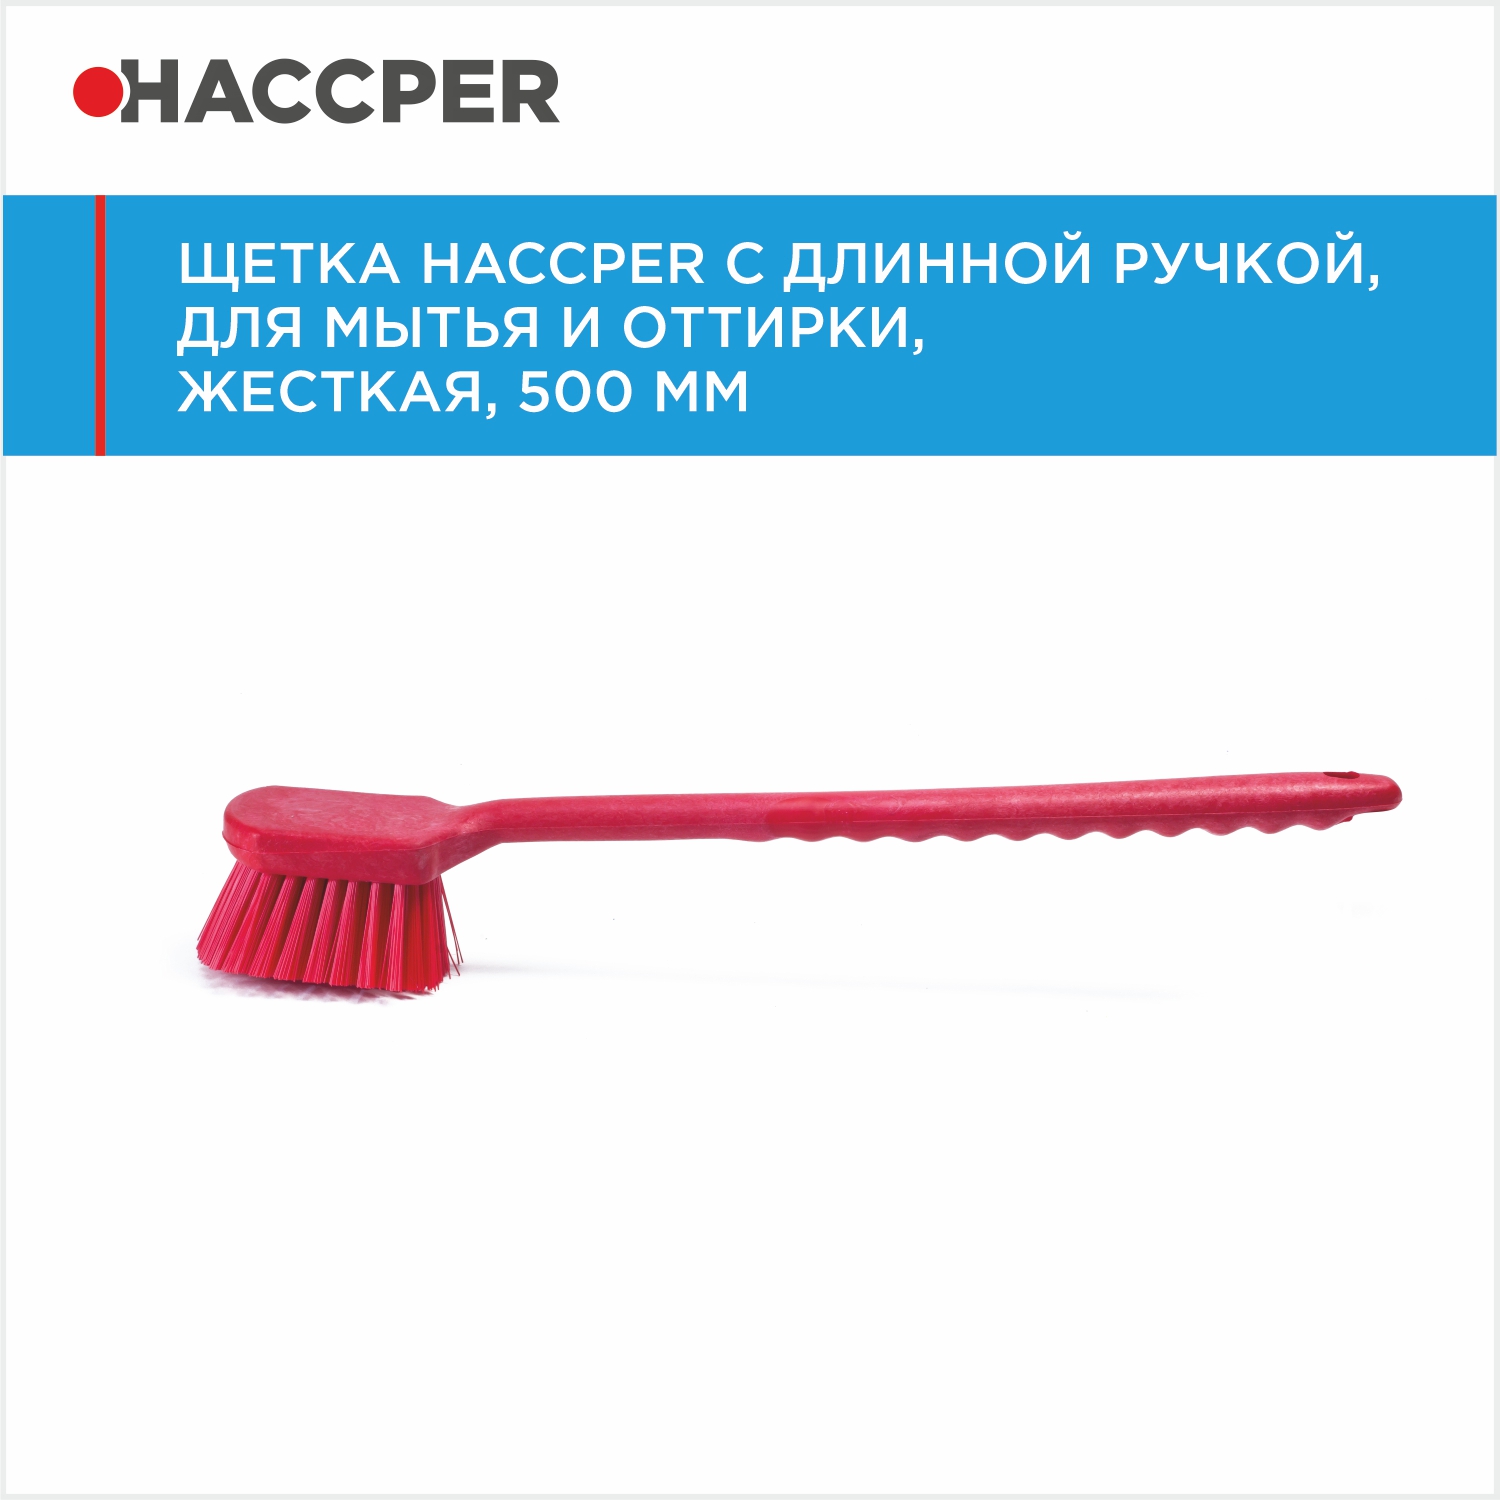 Щетка HACCPER с длинной ручкой, для мытья и оттирки, жесткая, 500 мм, красная